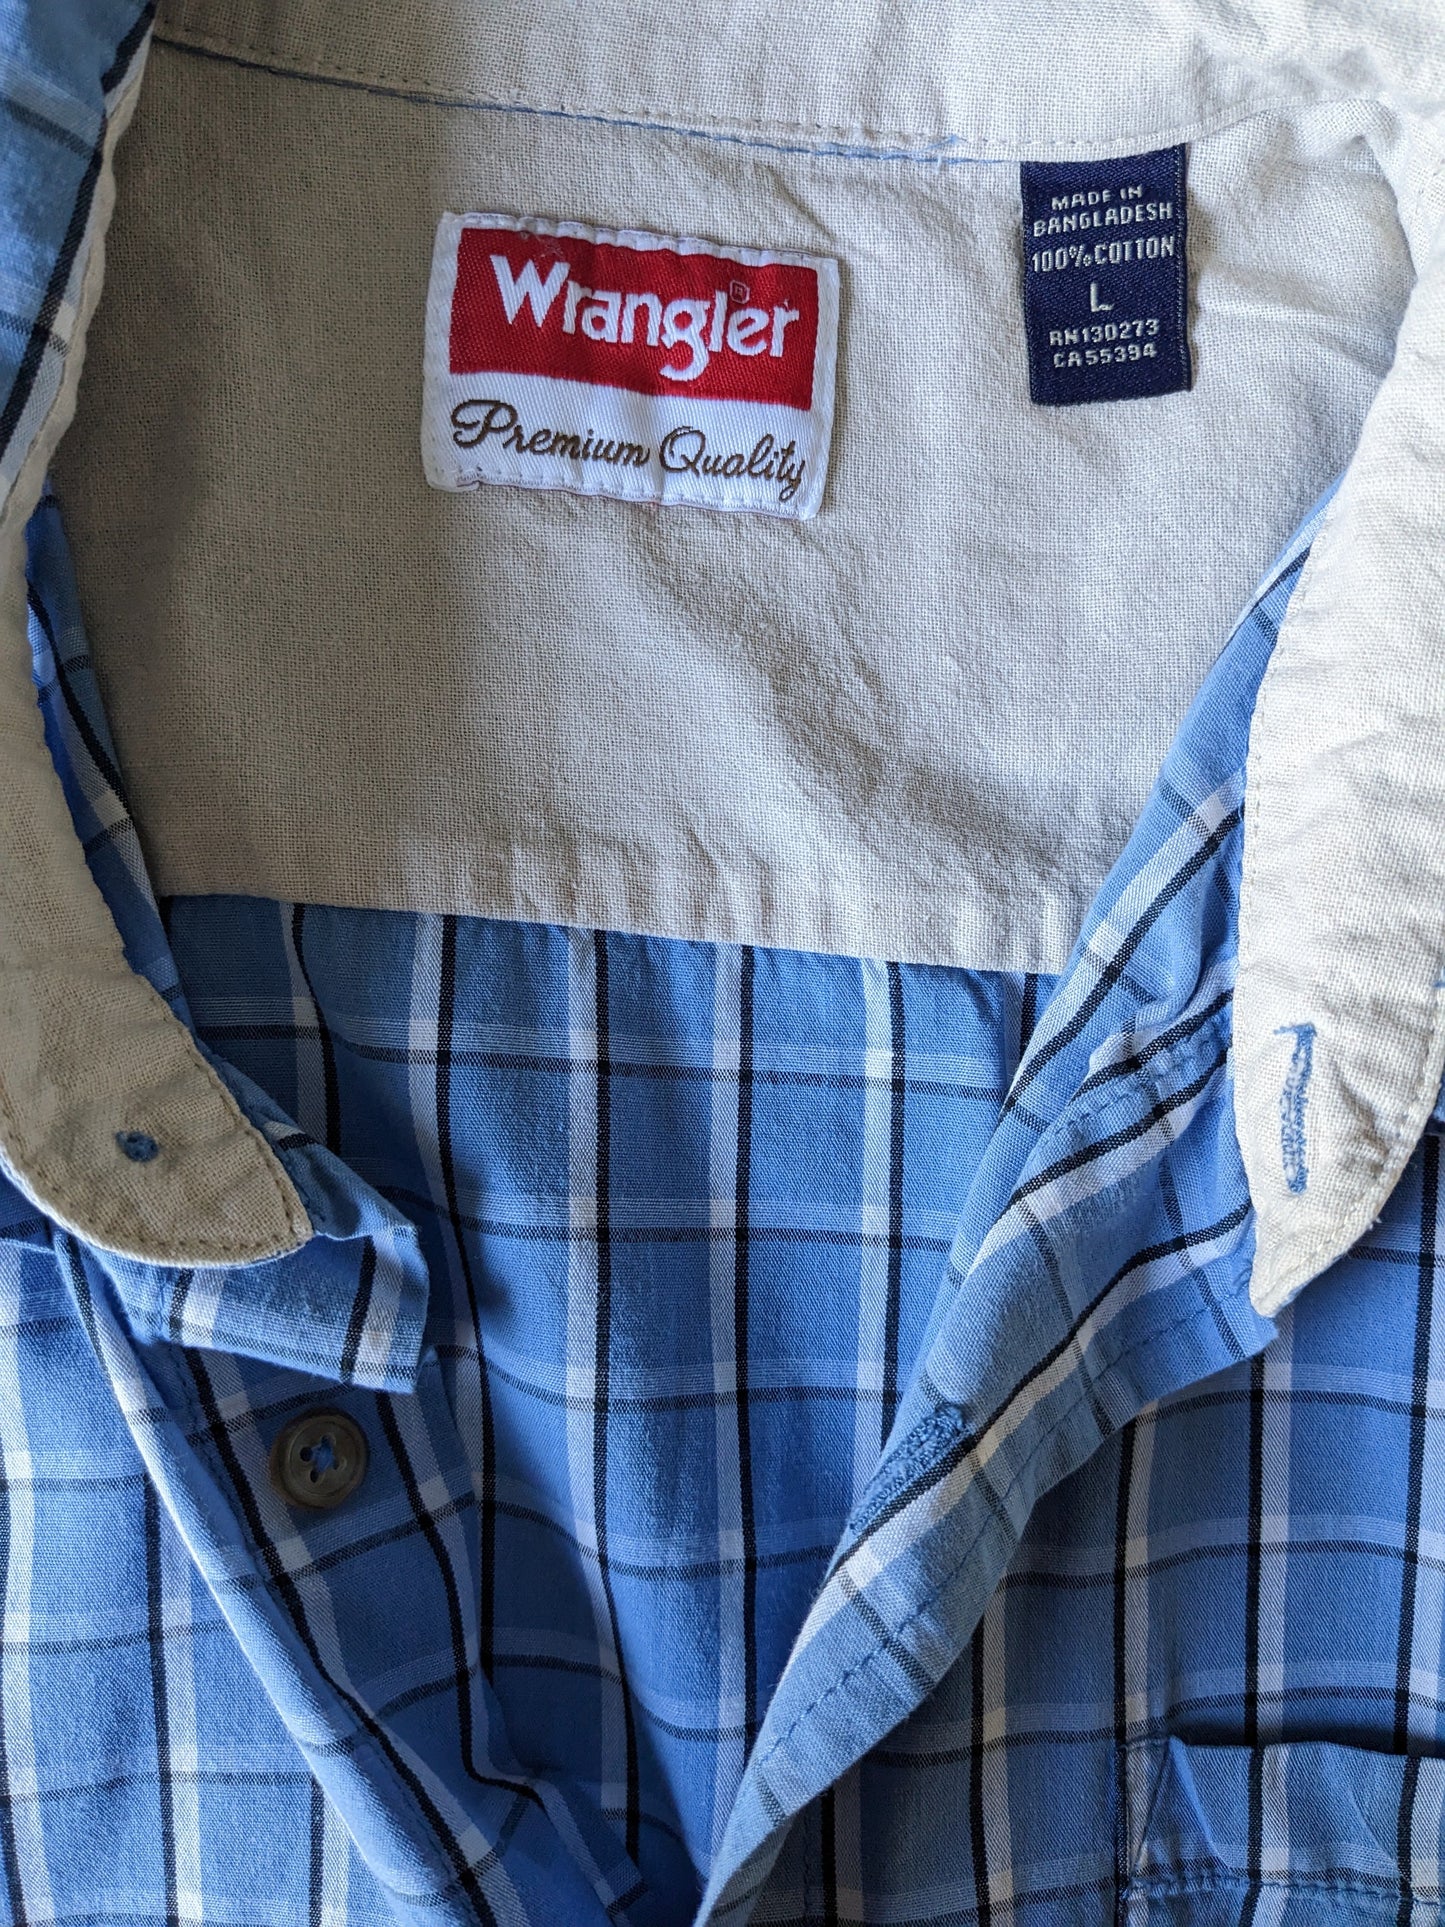 Shirt Wrangler Casta corta. Nero bianco blu controllato. Taglia L / XL.